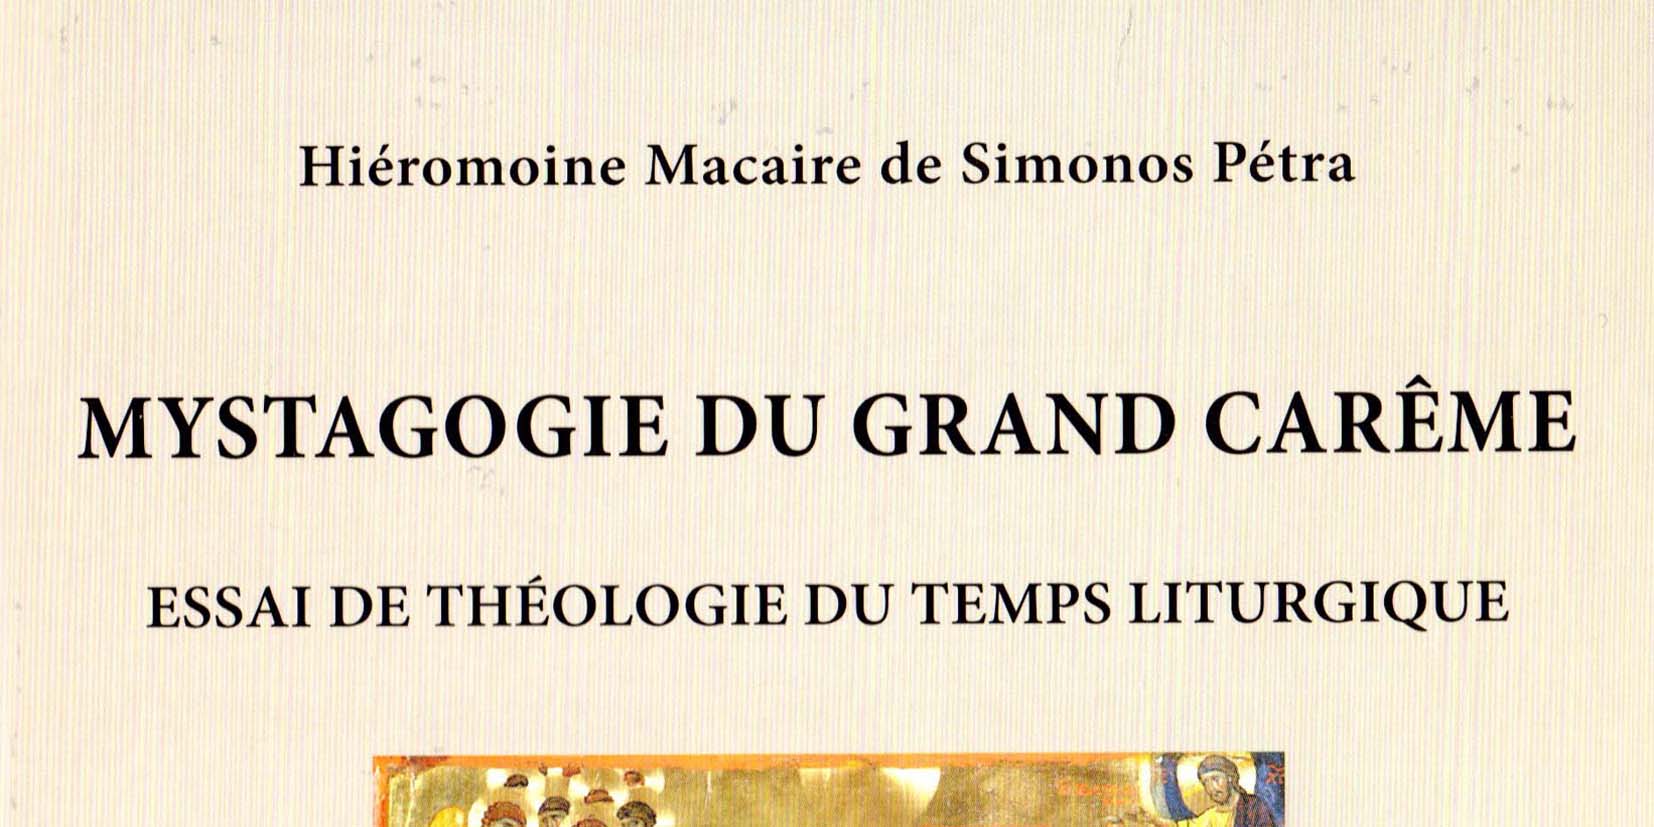 Le livre « Mystagogie du Grand Carême » du hiéromoine Macaire de Simonos Pétra,  disponible en e-book